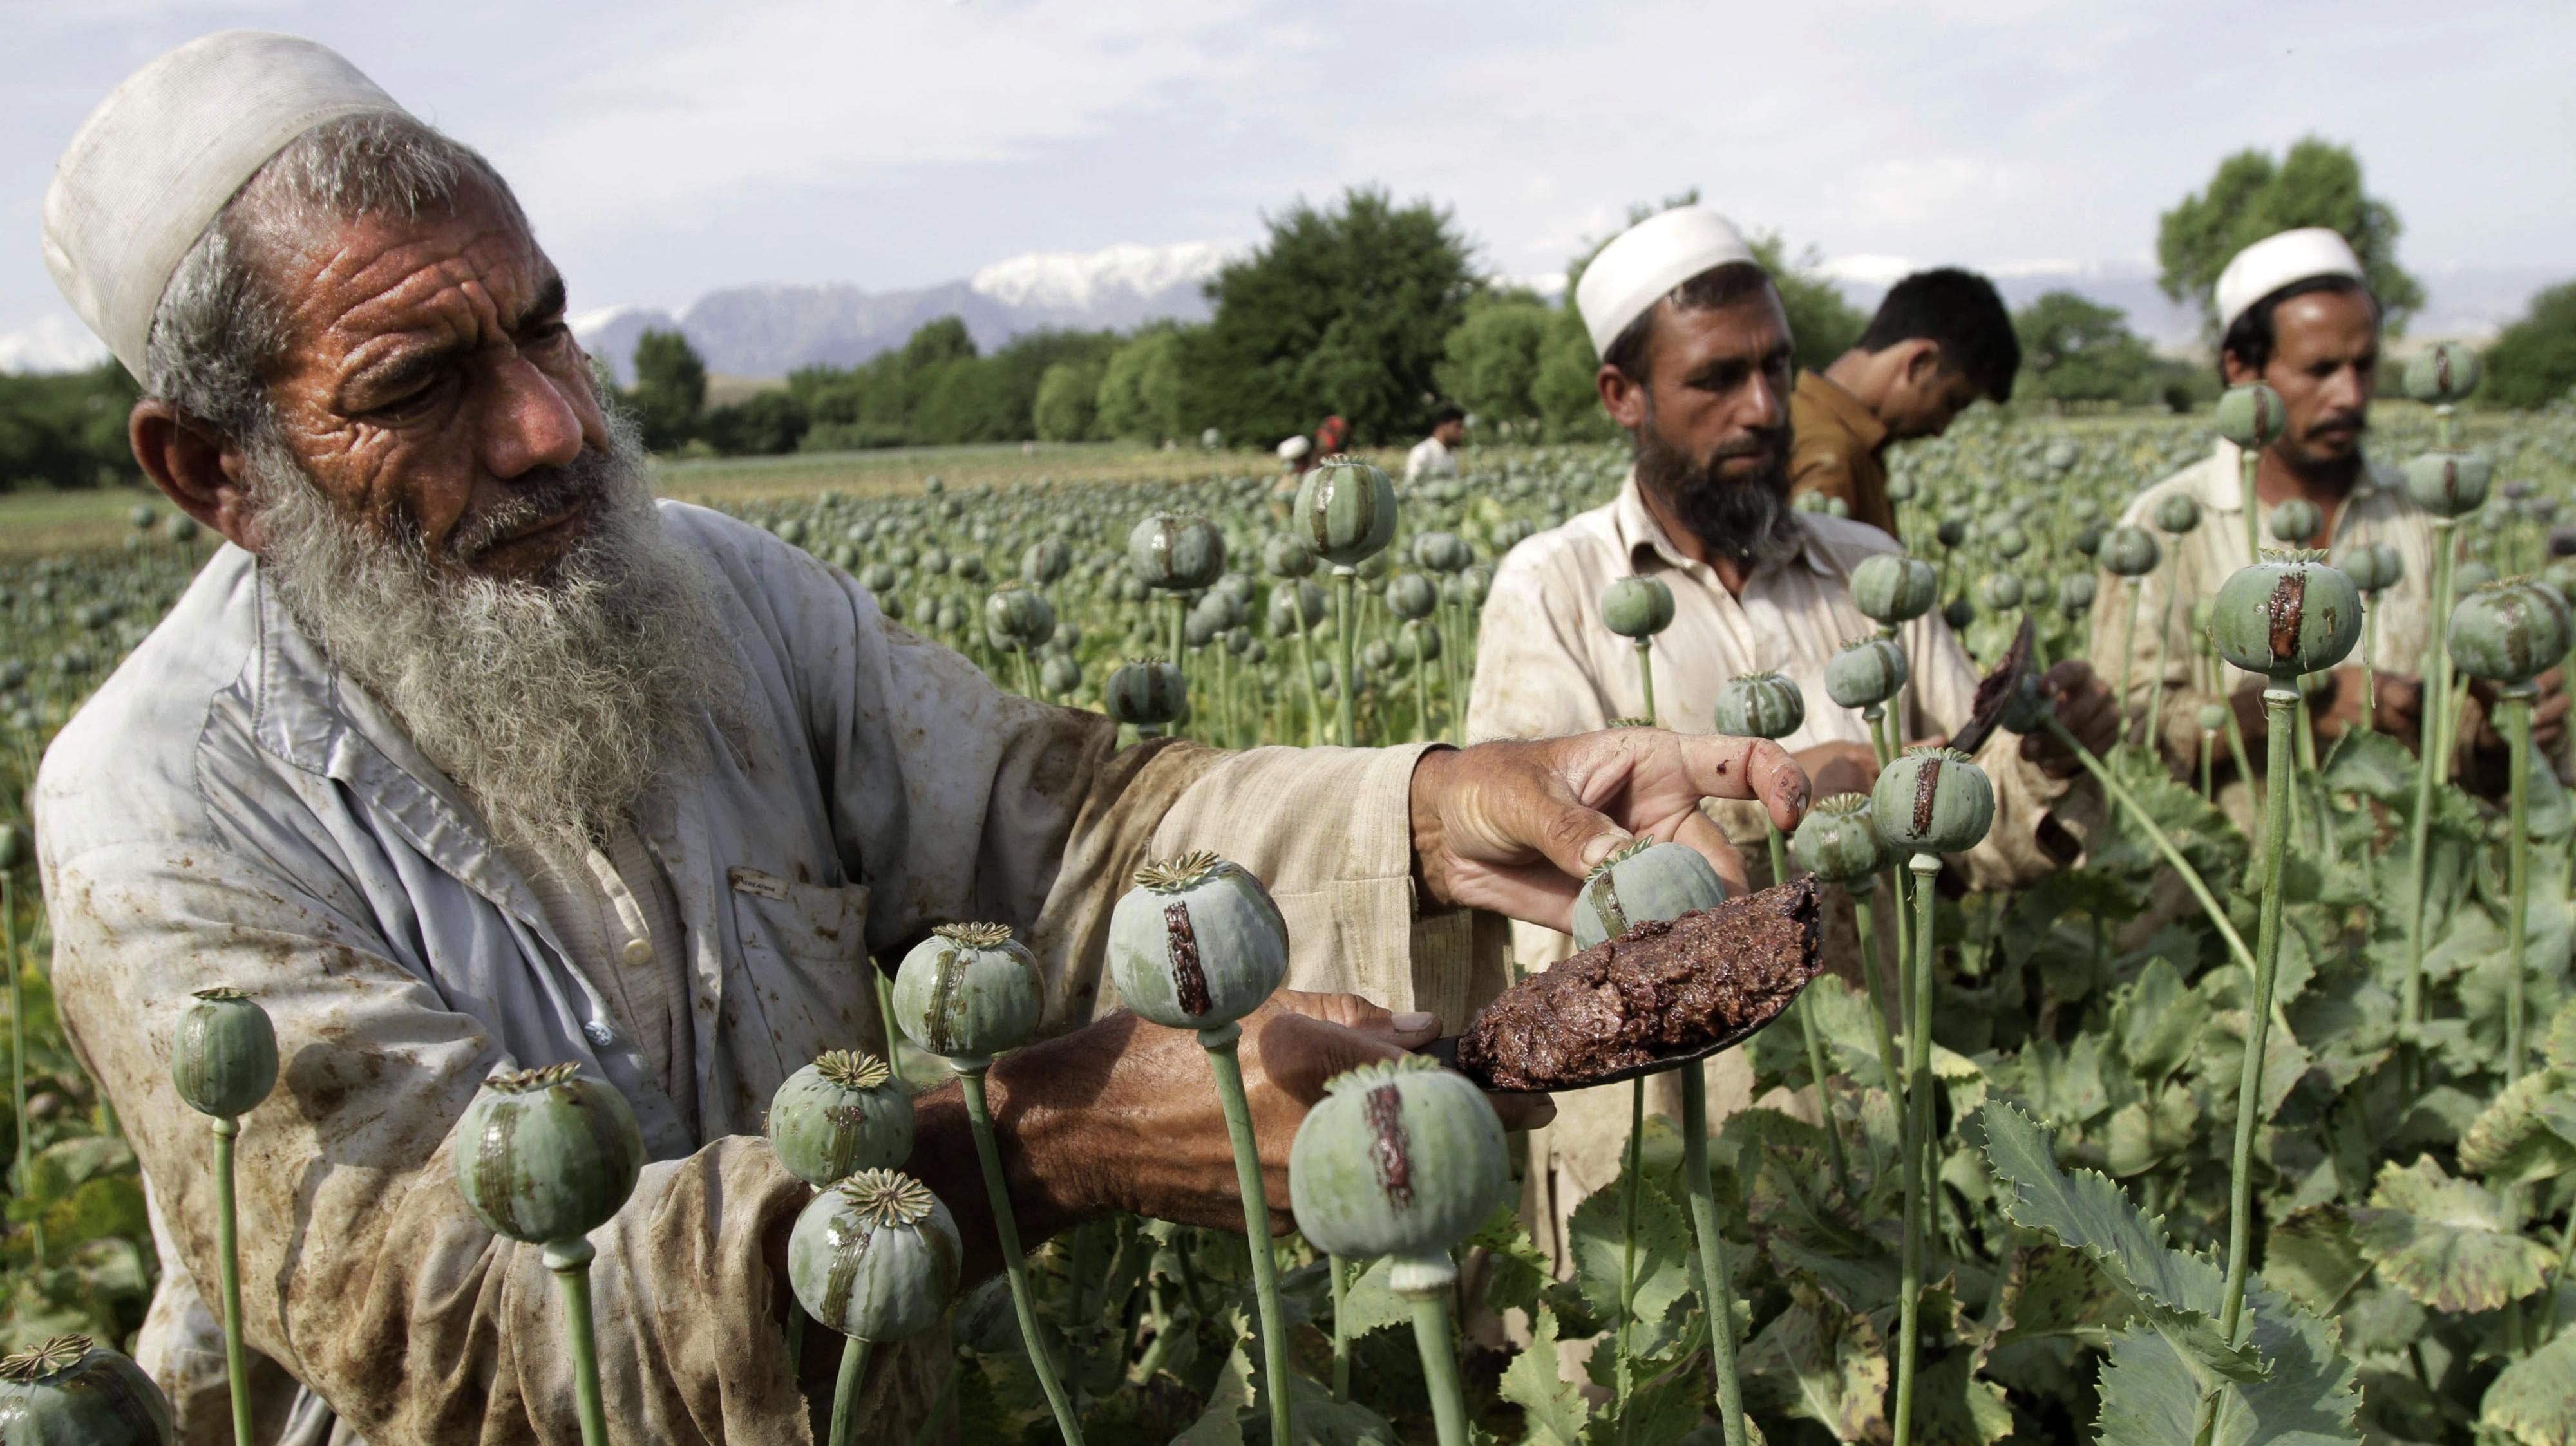 Товарами талибов являются наемники и наркотики, – аналитик о потере ВВП в Афганистане